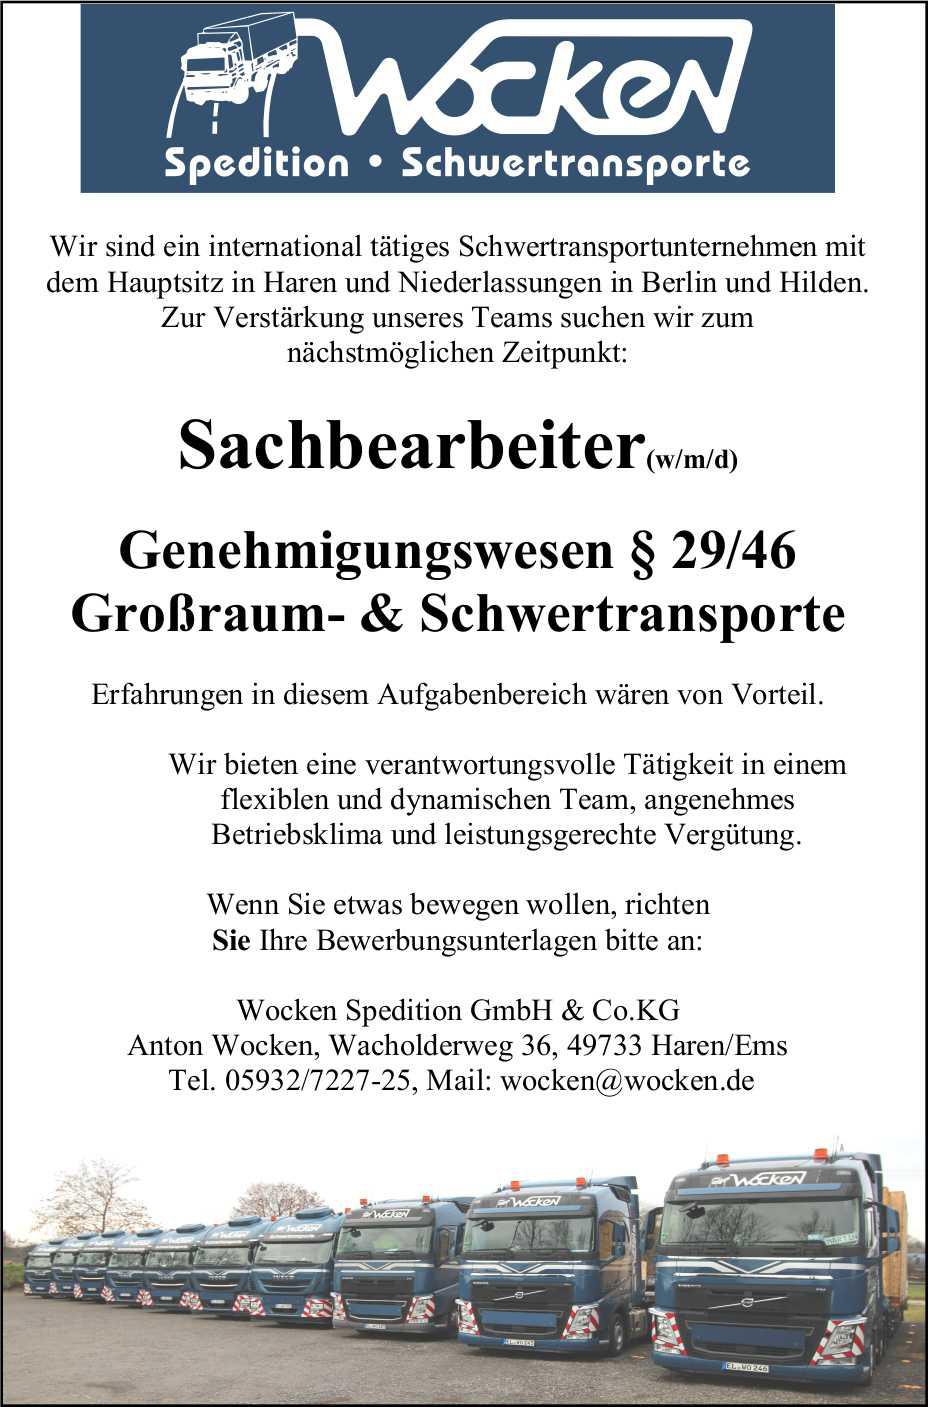 Wocken Spedition GmbH & Co. KG sucht Sachbearbeiter (m/w/d)